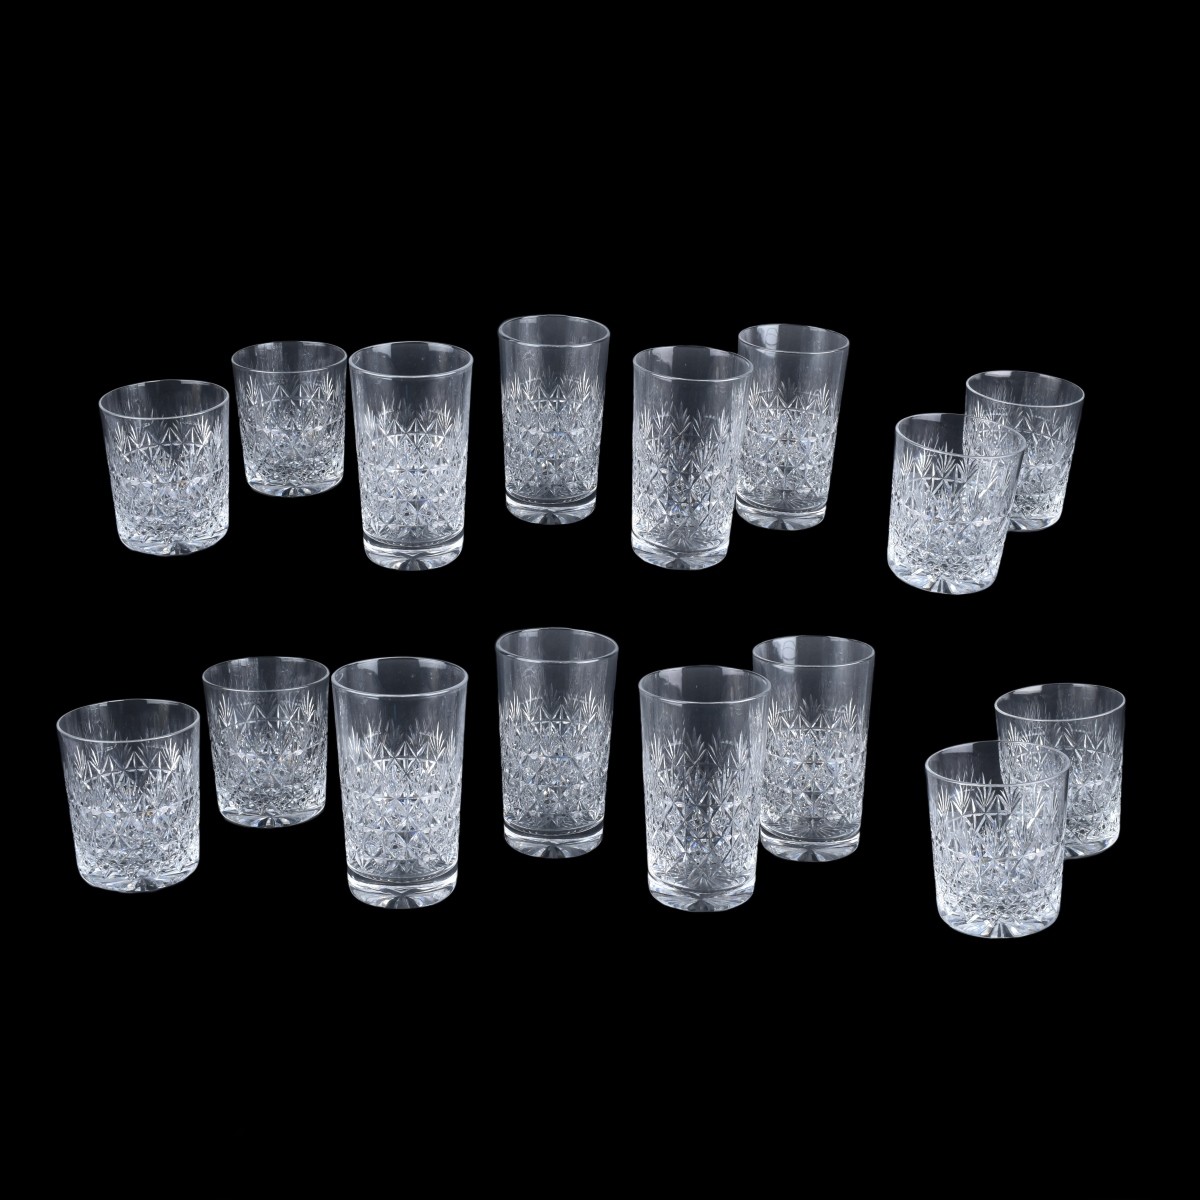 16 Thomas Webb Cut Crystal Glasses